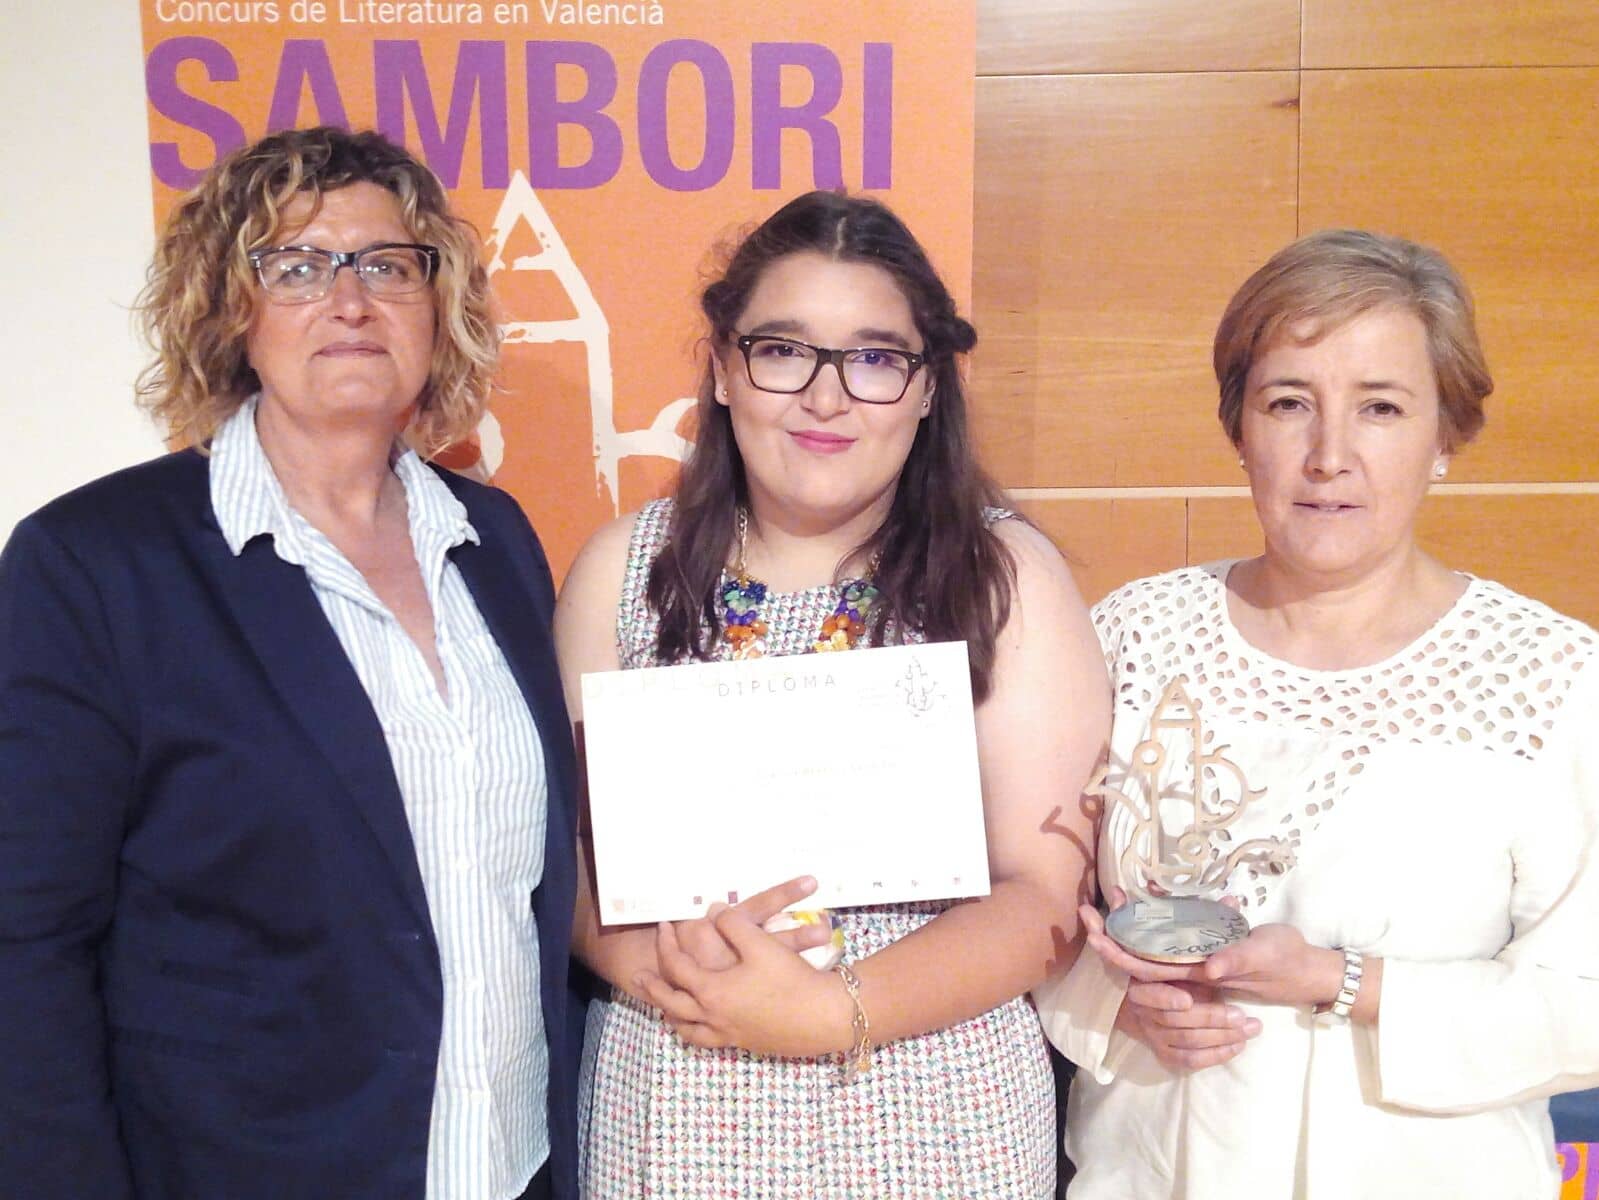 Claudia Beneyto del IES Las Fuentes, tercera clasificado en el concurso Sambori de Literatura Valenciana